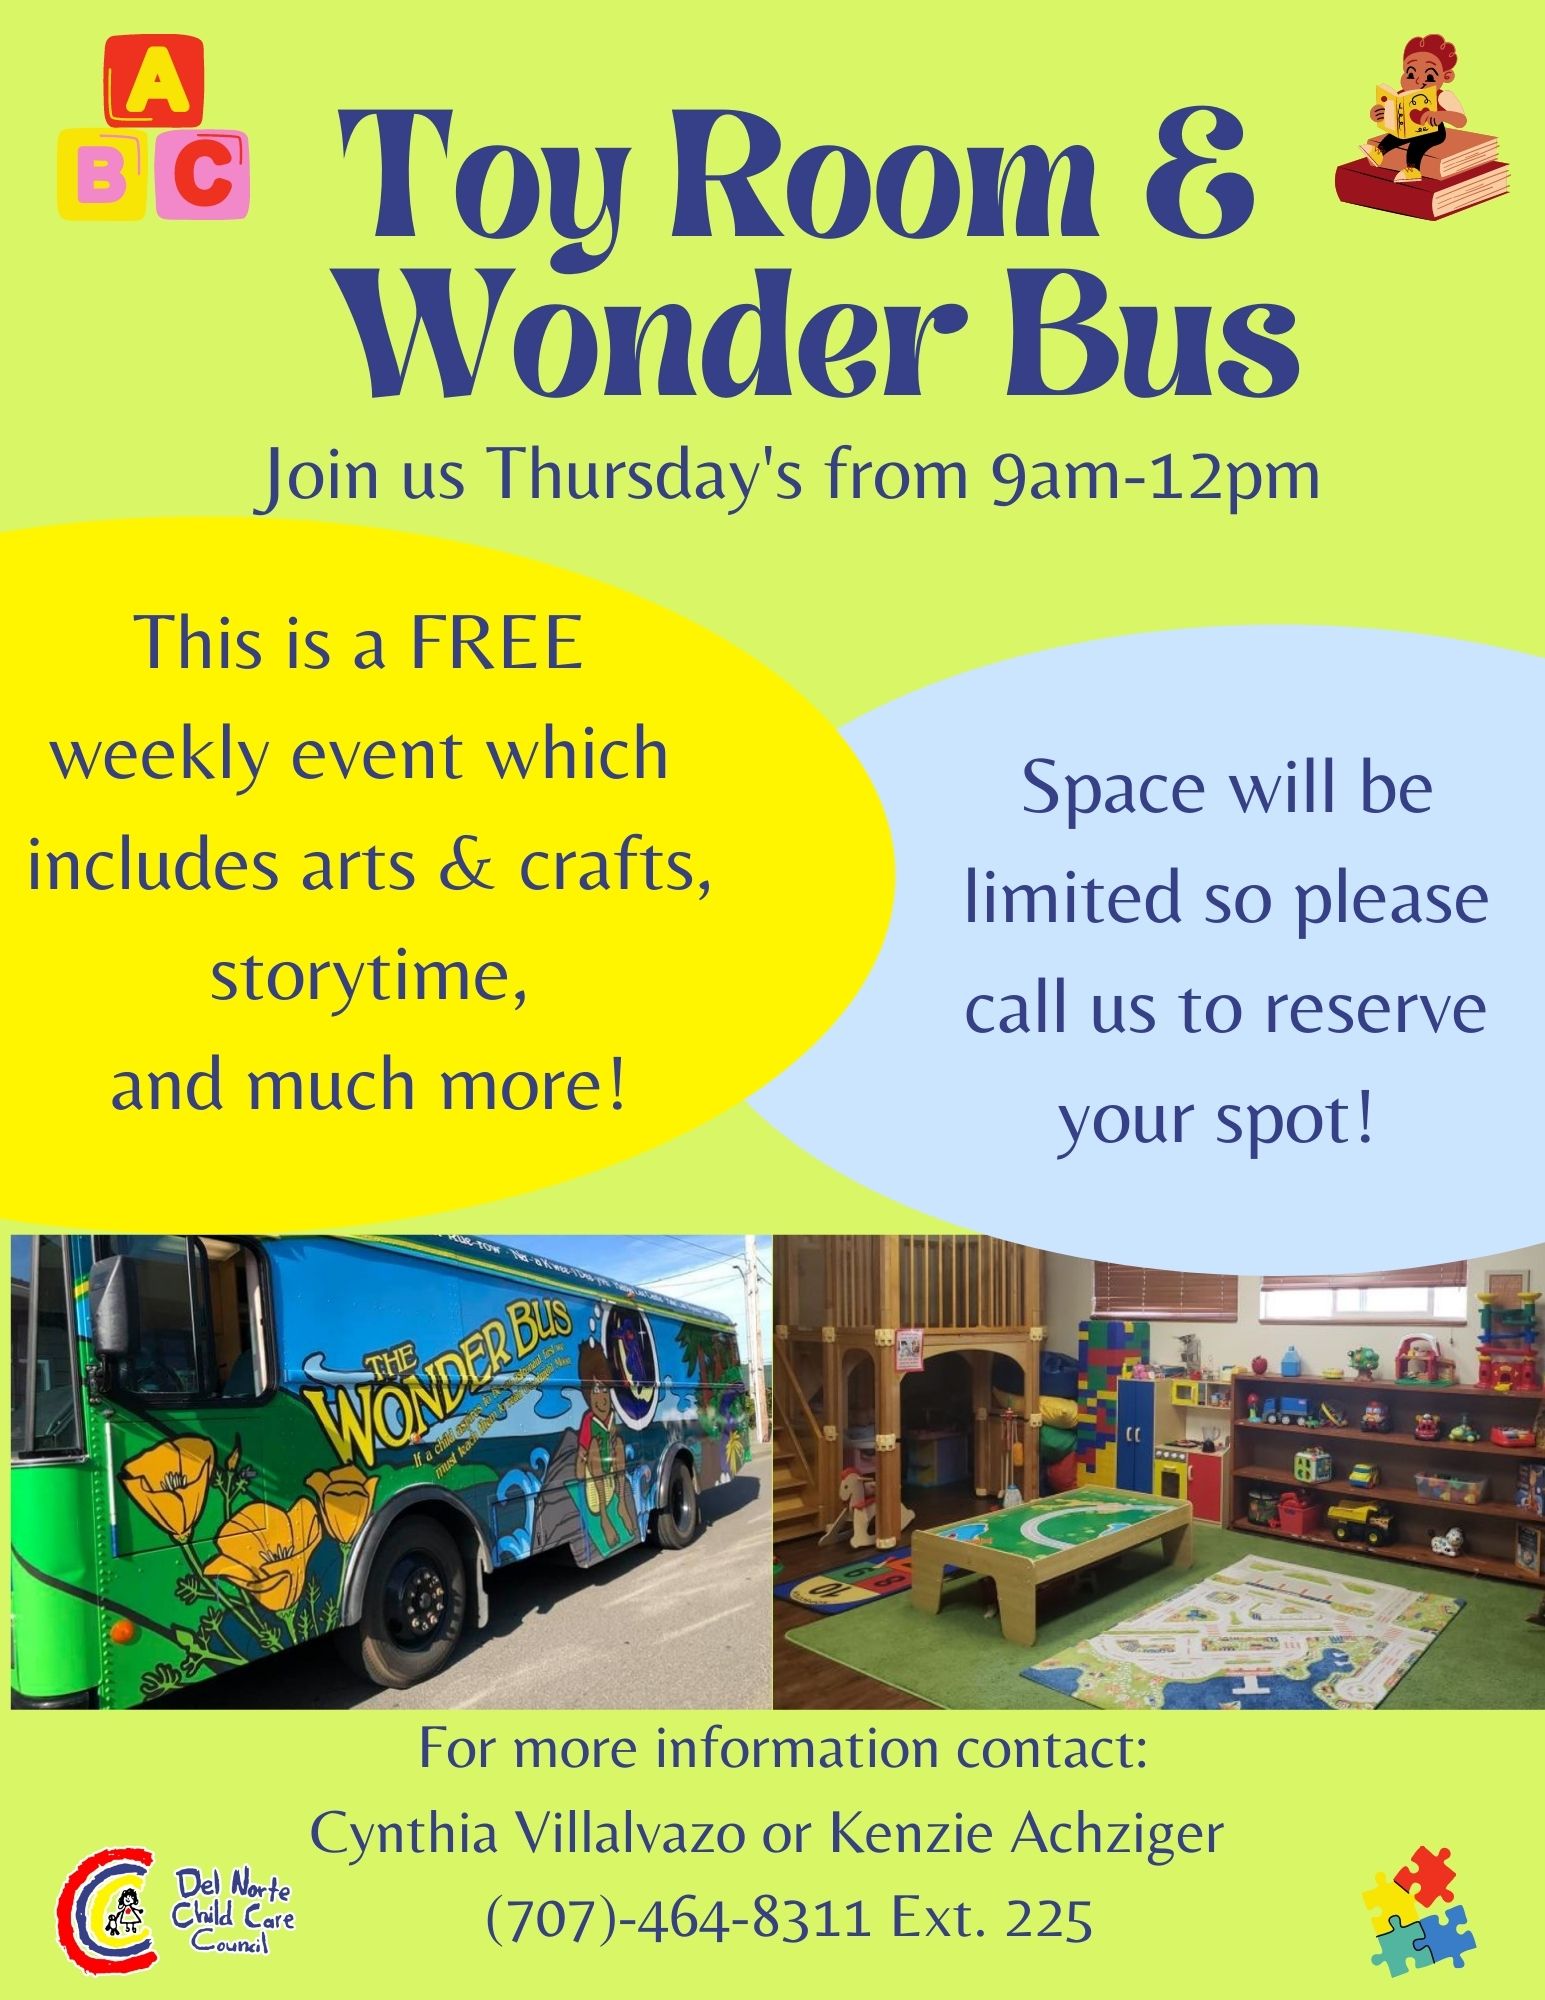 toy-room-wonder-bus-thursday-del-norte-child-care-council